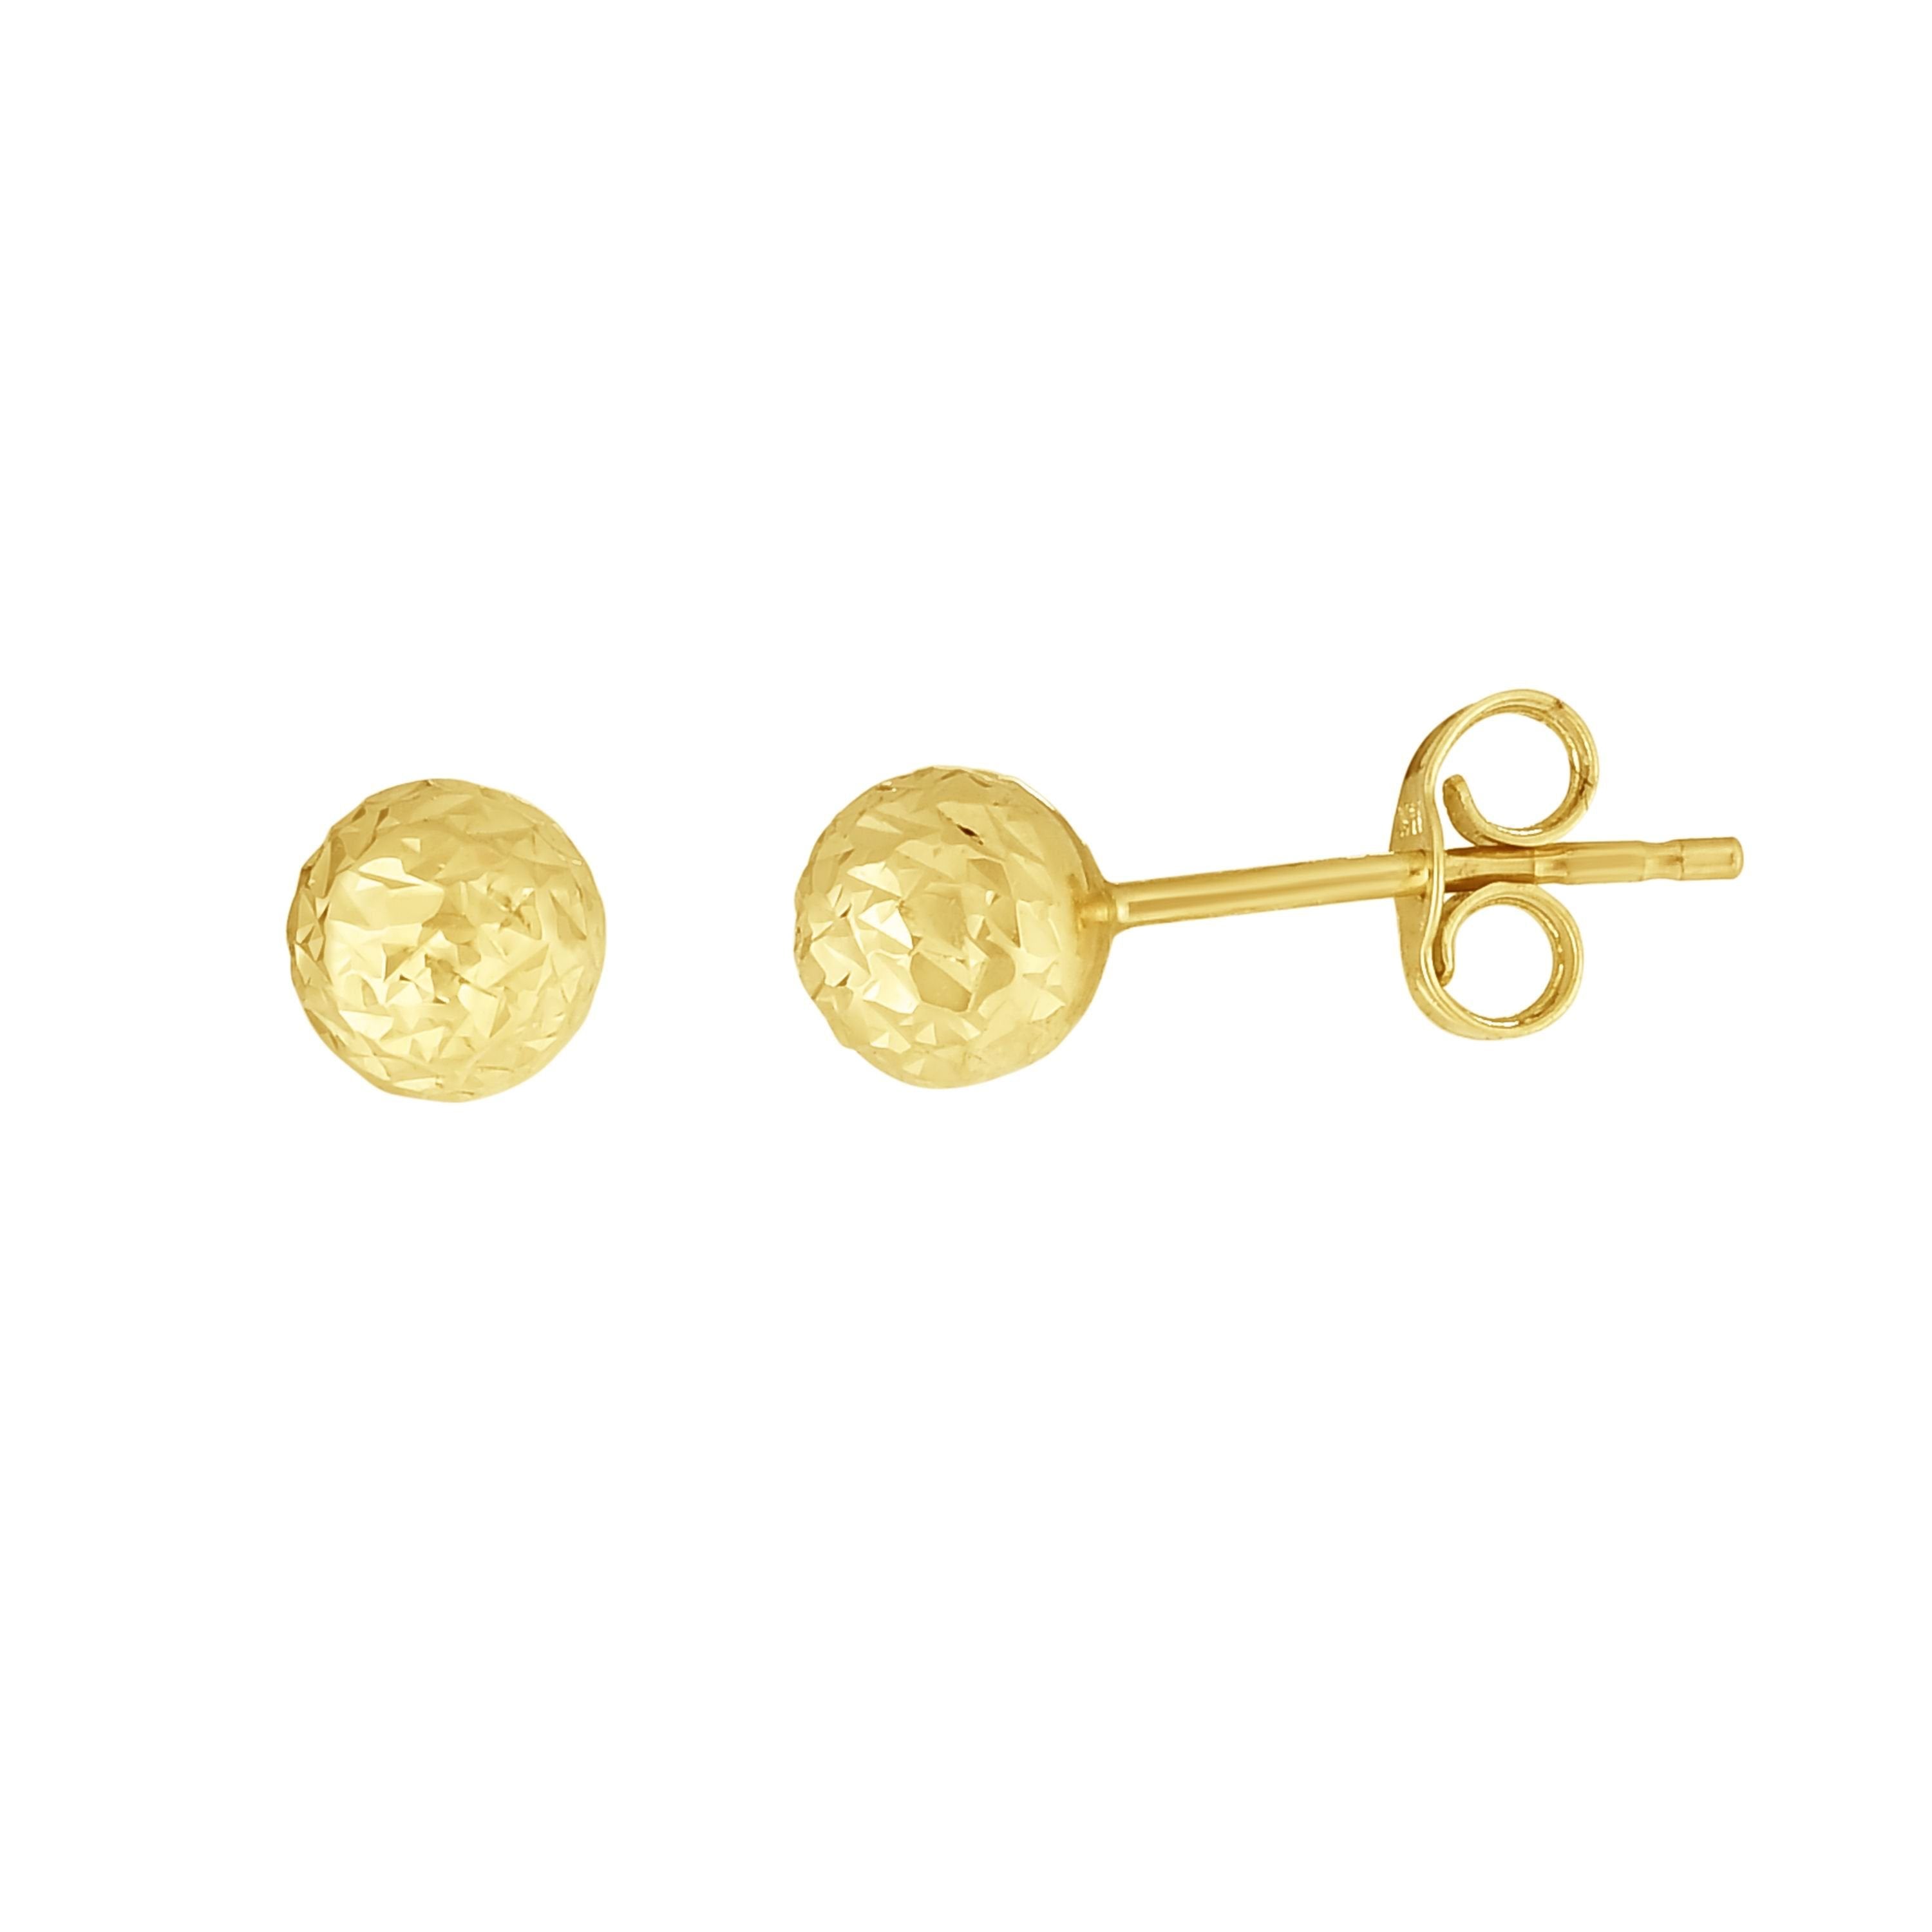 5.0mm Diamond-Cut Ball Stud Earrings in 14K Gold